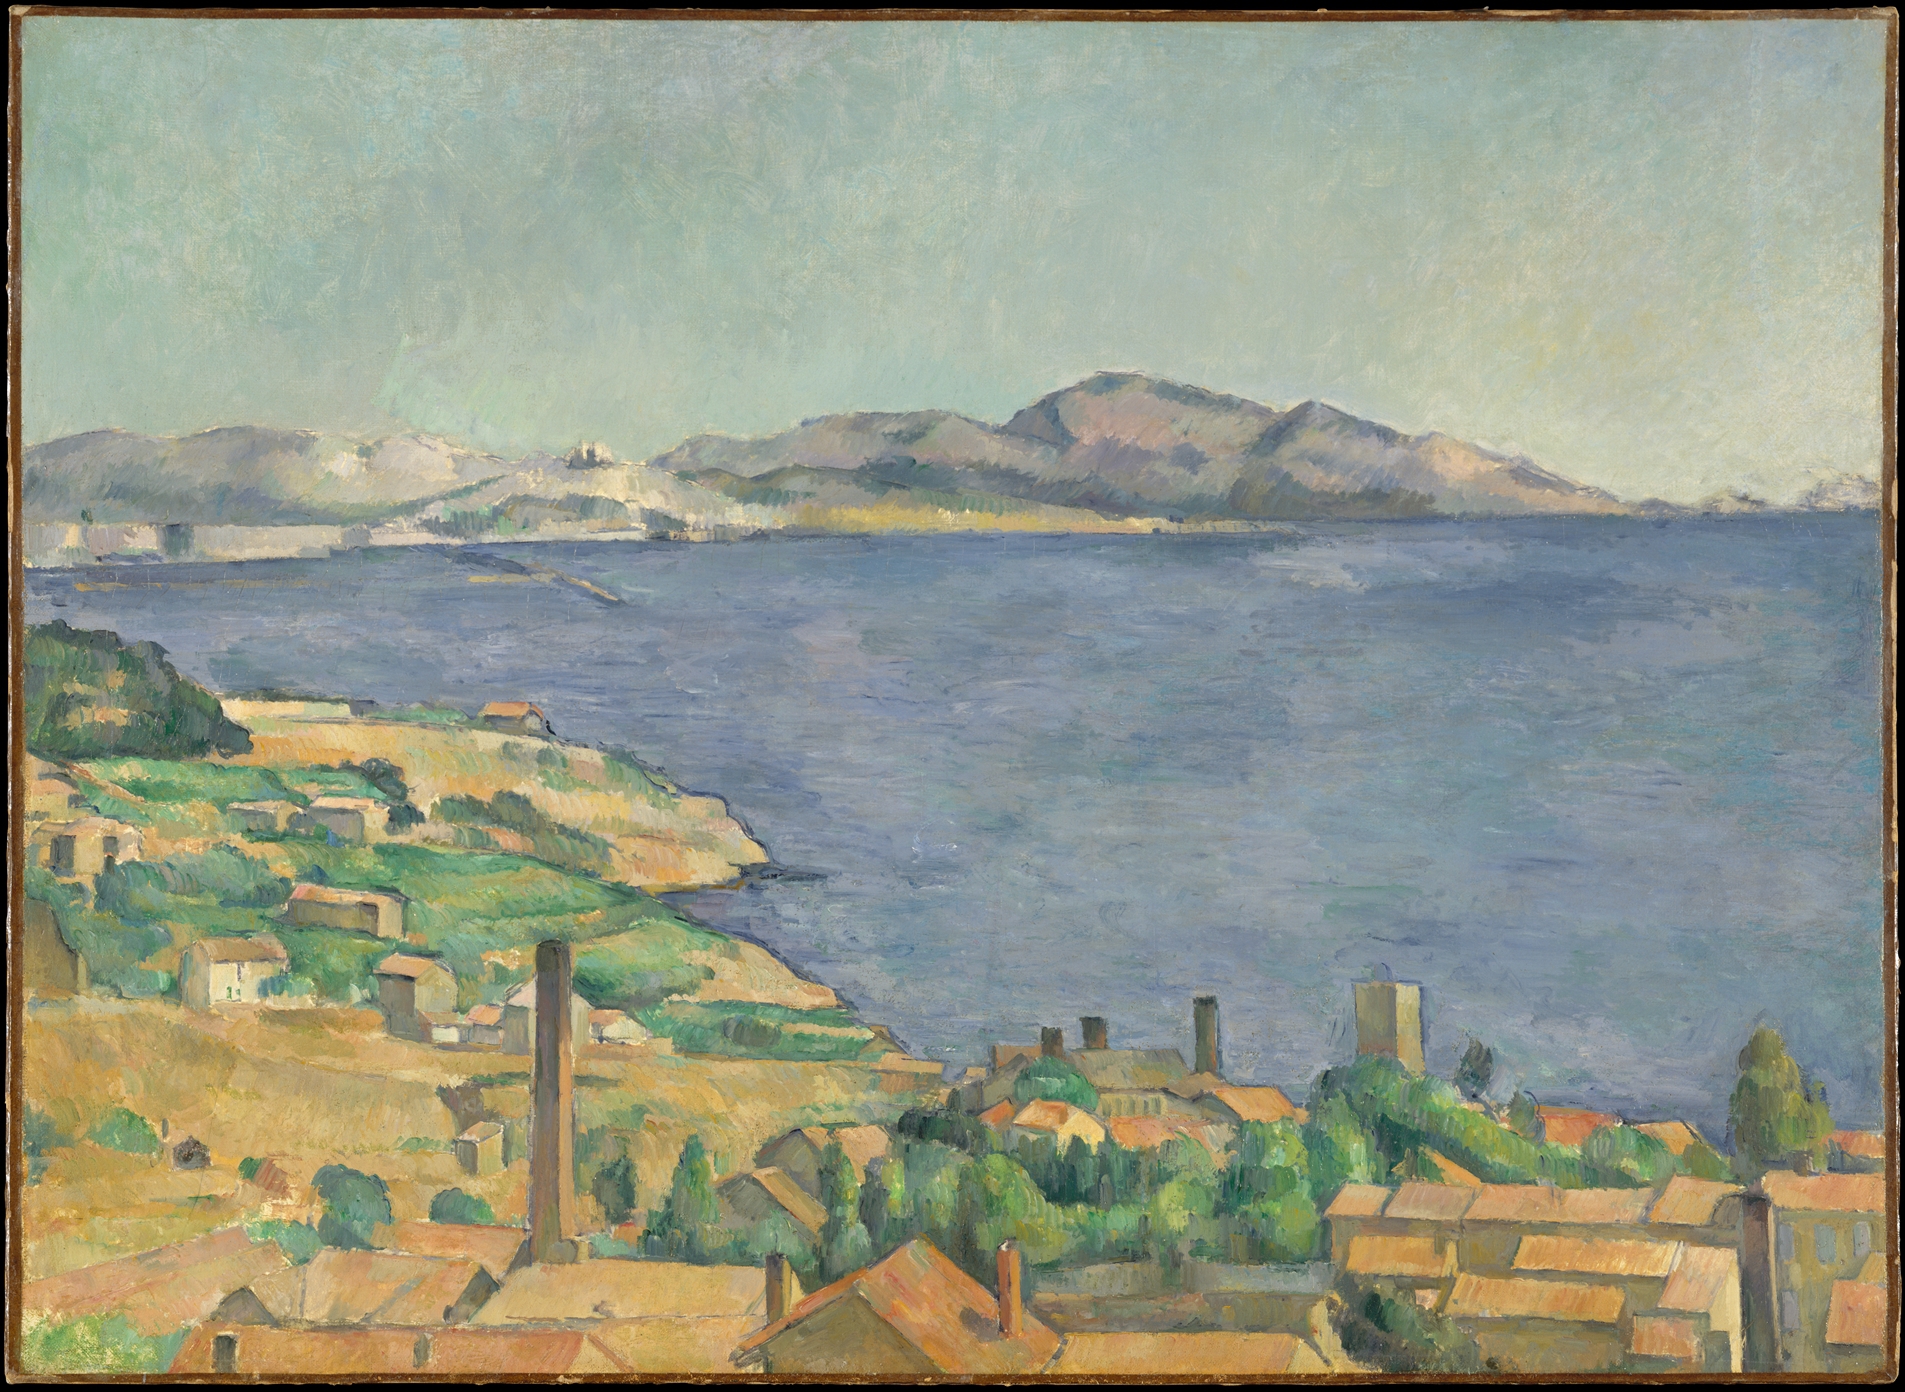 El golfo de Marsella visto desde L'Estaque by Paul Cézanne - c. 1885 - 73 x 100,3 cm Museo Metropolitano de Arte